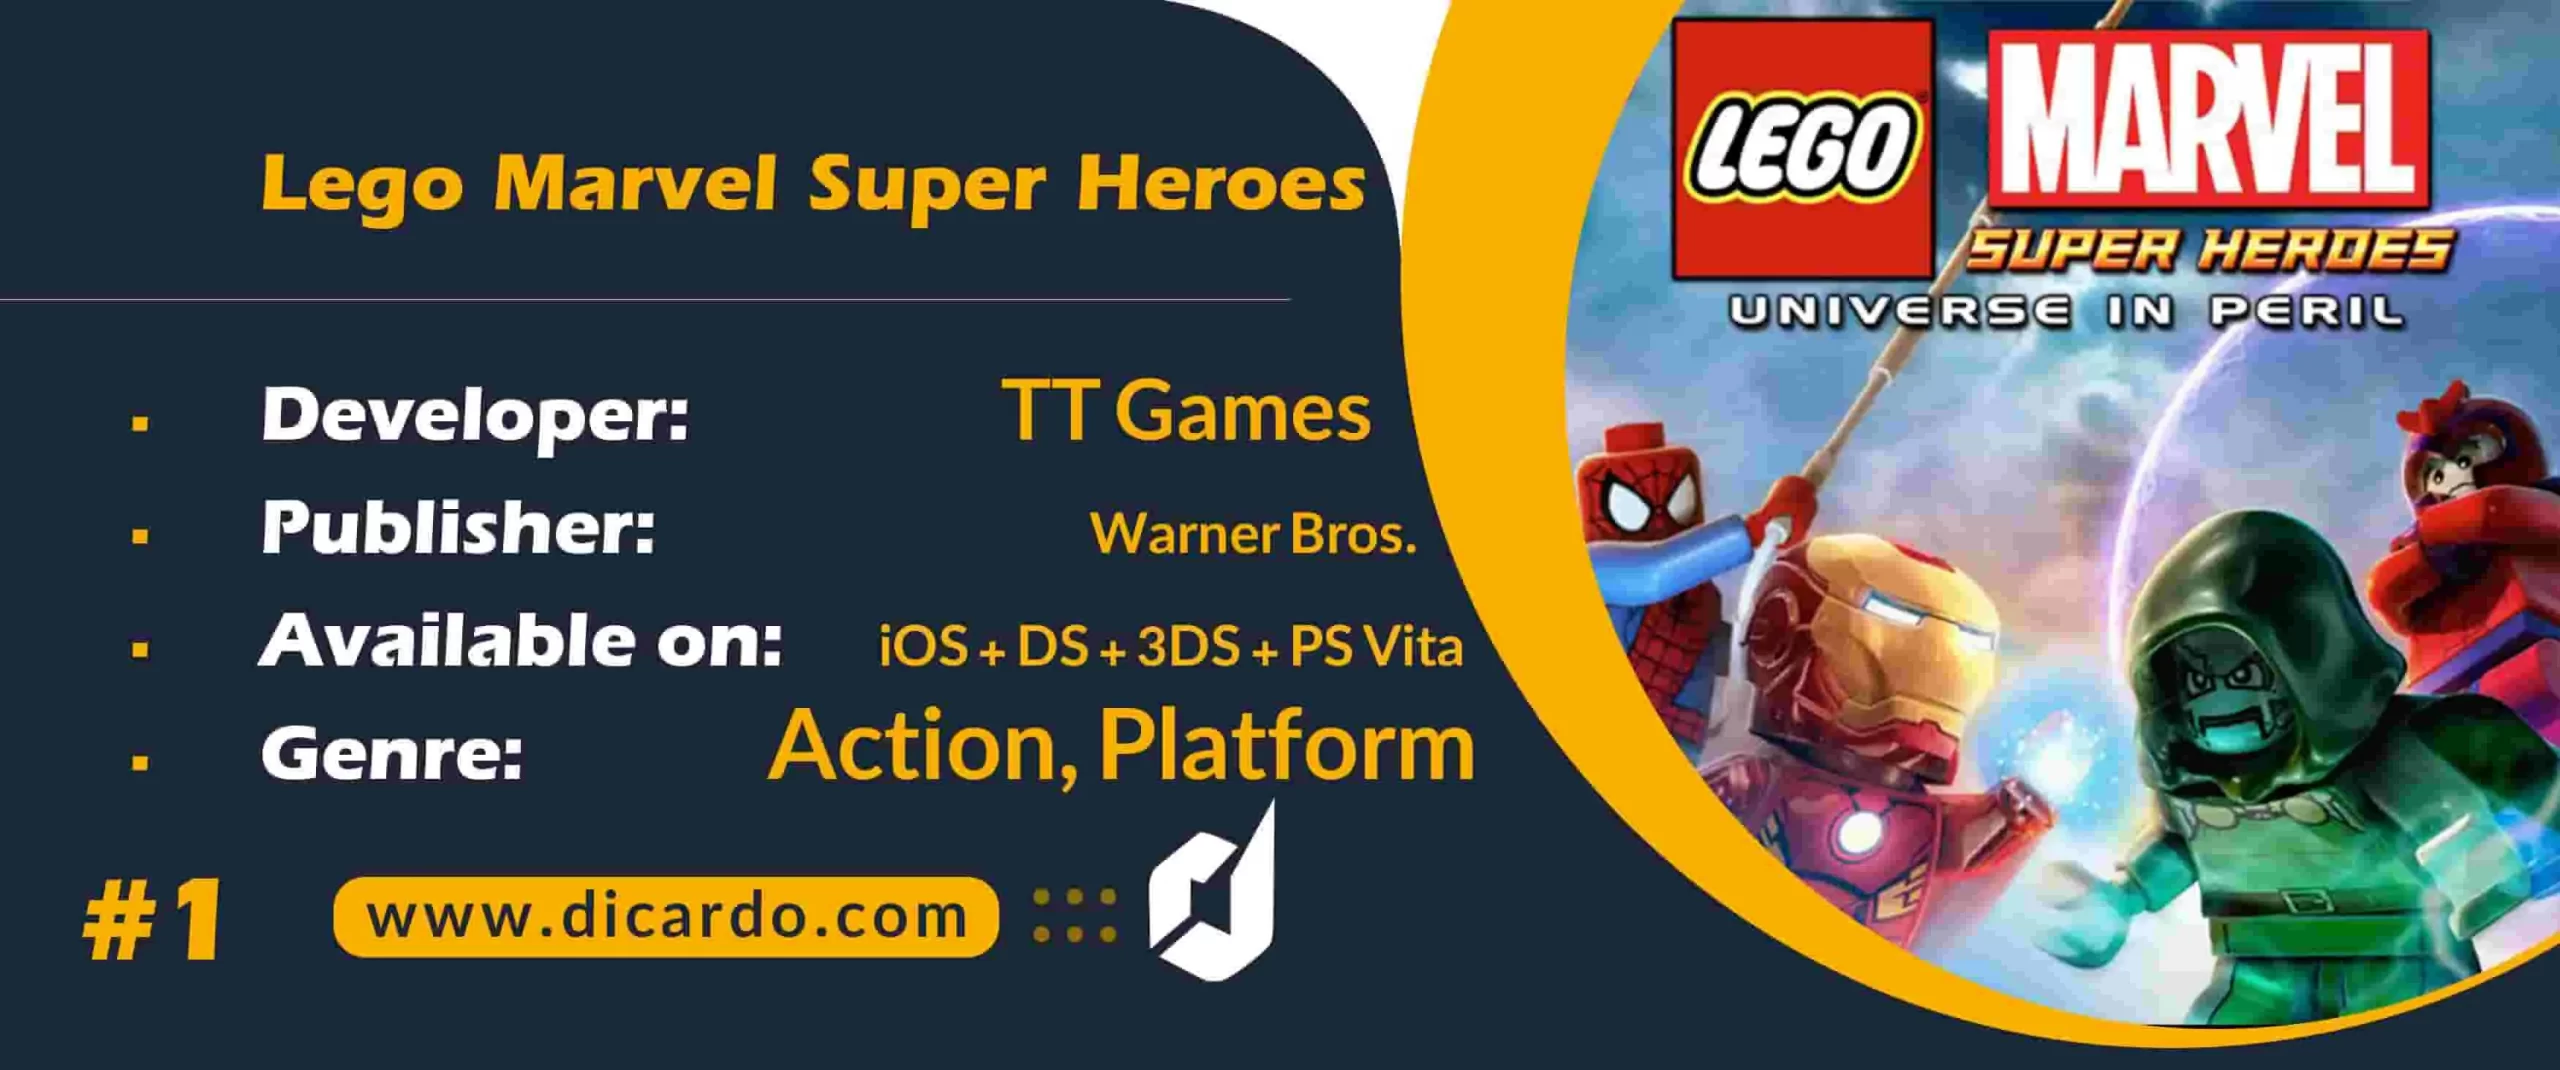  #1 لگو مارول سوپر هیروز Lego Marvel Super Heroes رتبه اول بهترین بازیهای لگو